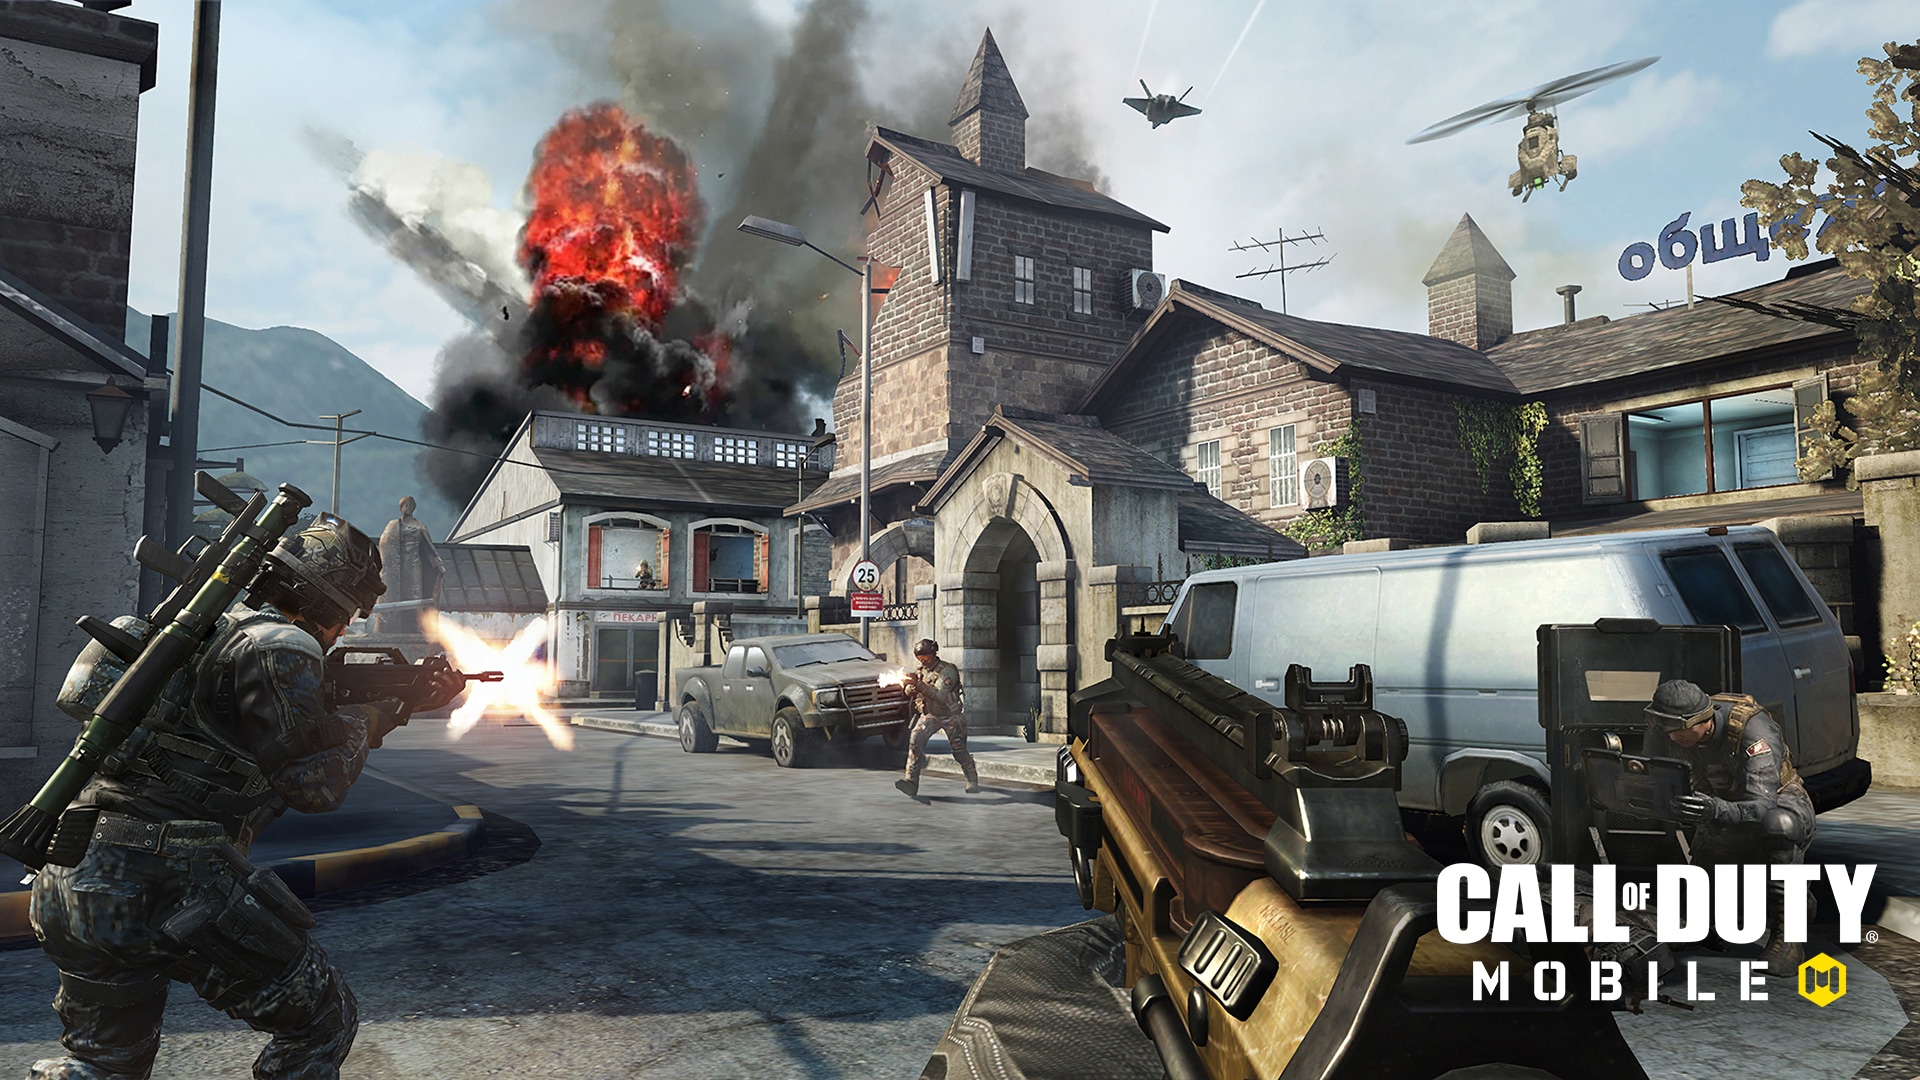 مع 100 مليون عملية تنزيل ، فإن Call of Duty: Mobile هو أكبر إطلاق لعبة محمول في التاريخ